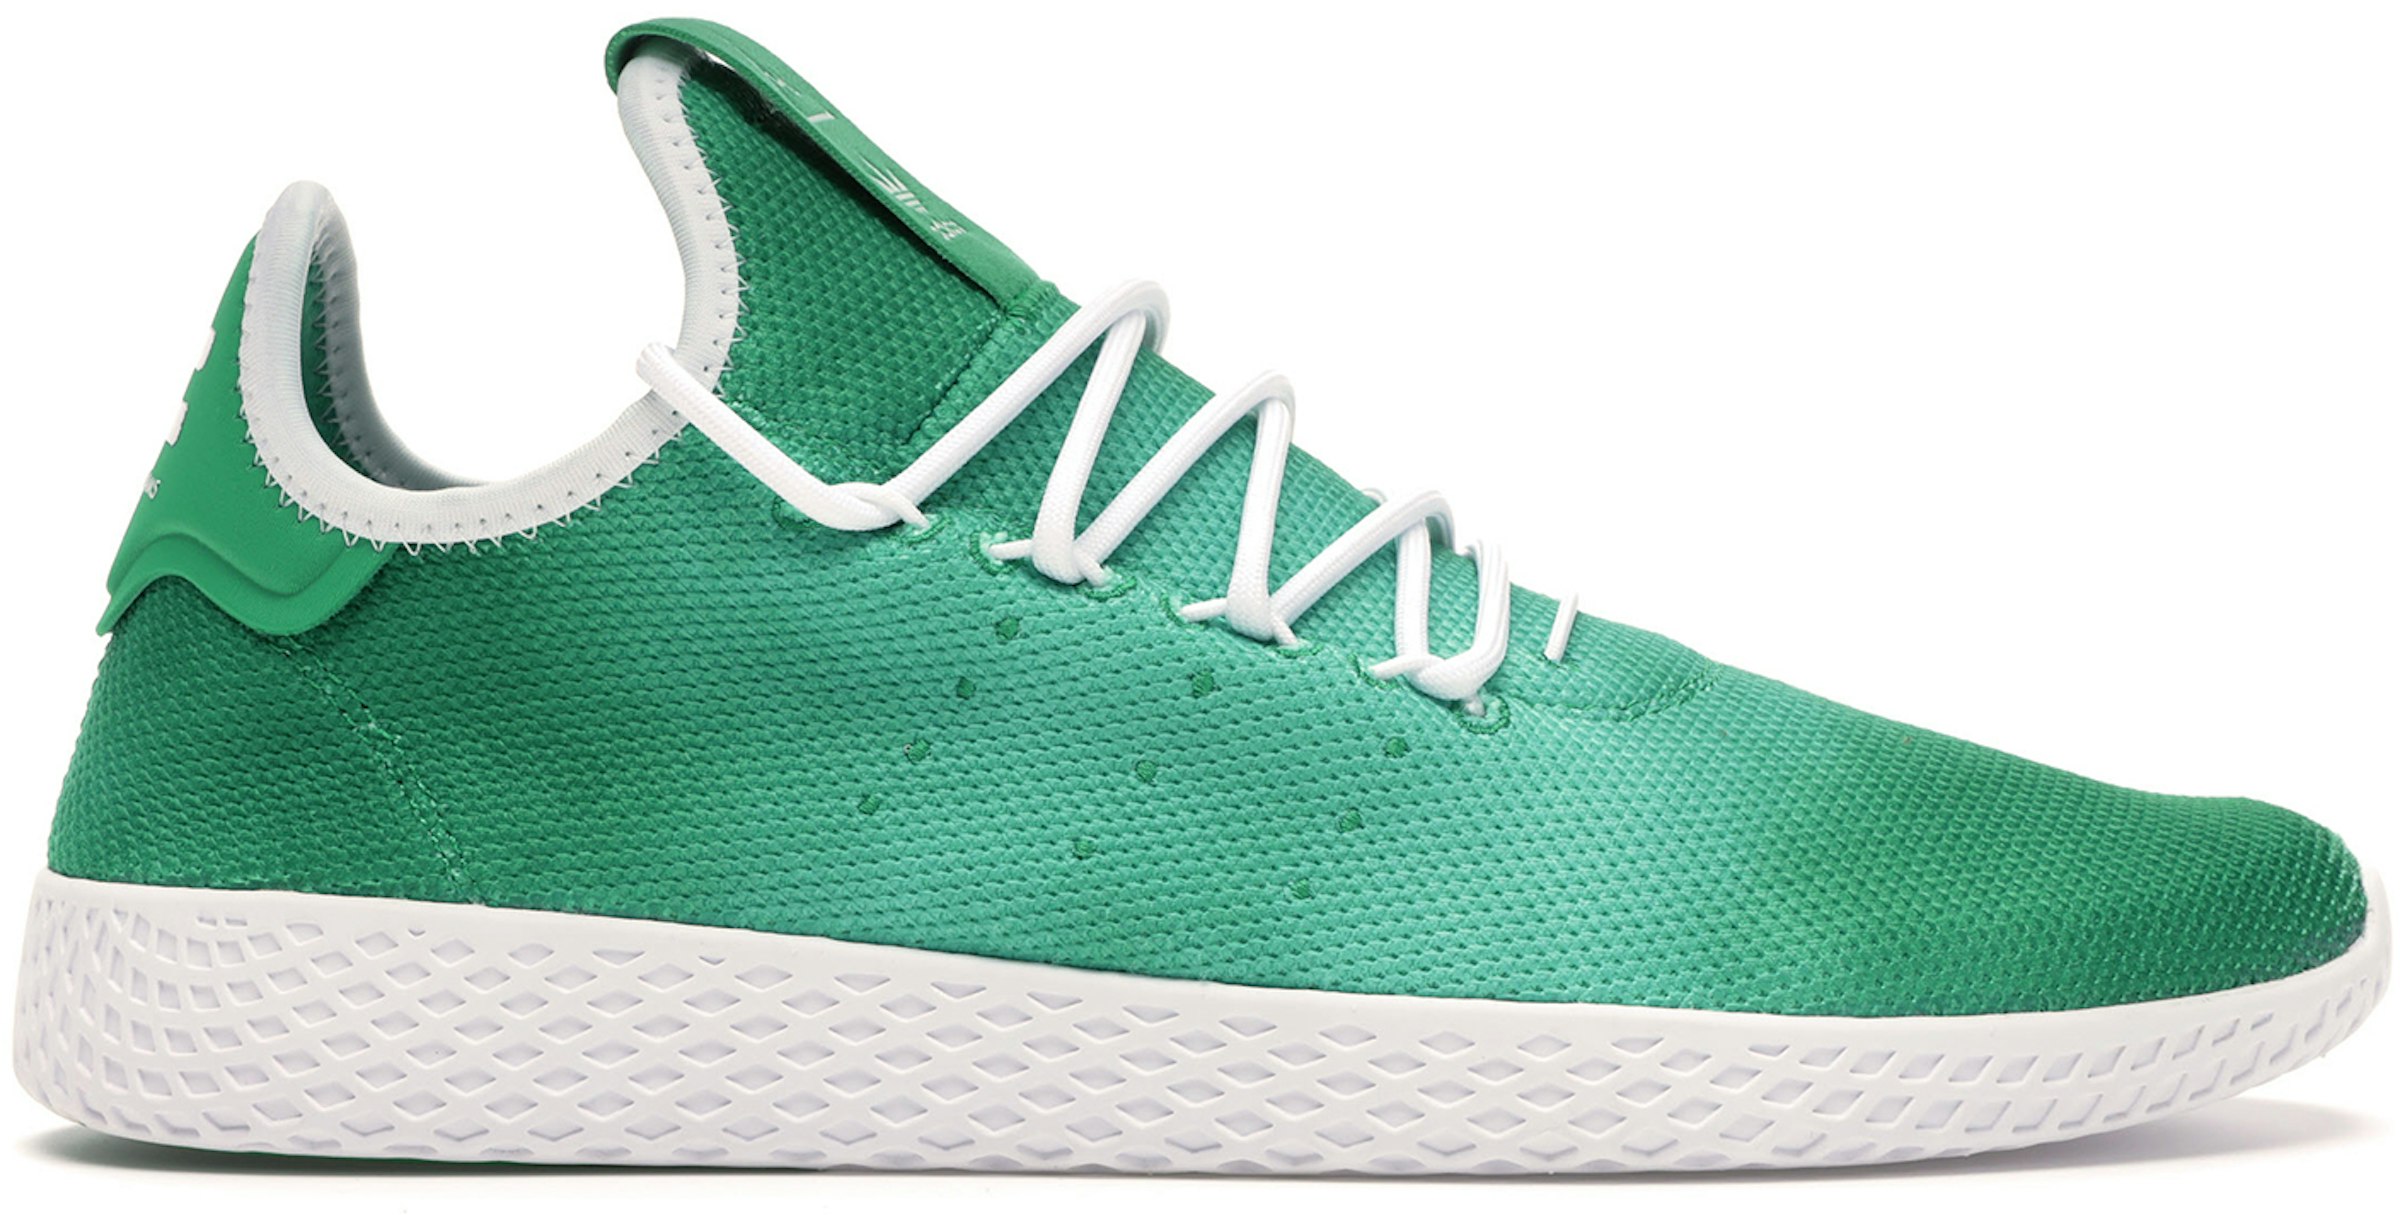 Een hekel hebben aan steno reflecteren adidas Tennis HU Pharrell Holi Green Men's - DA9619 - US